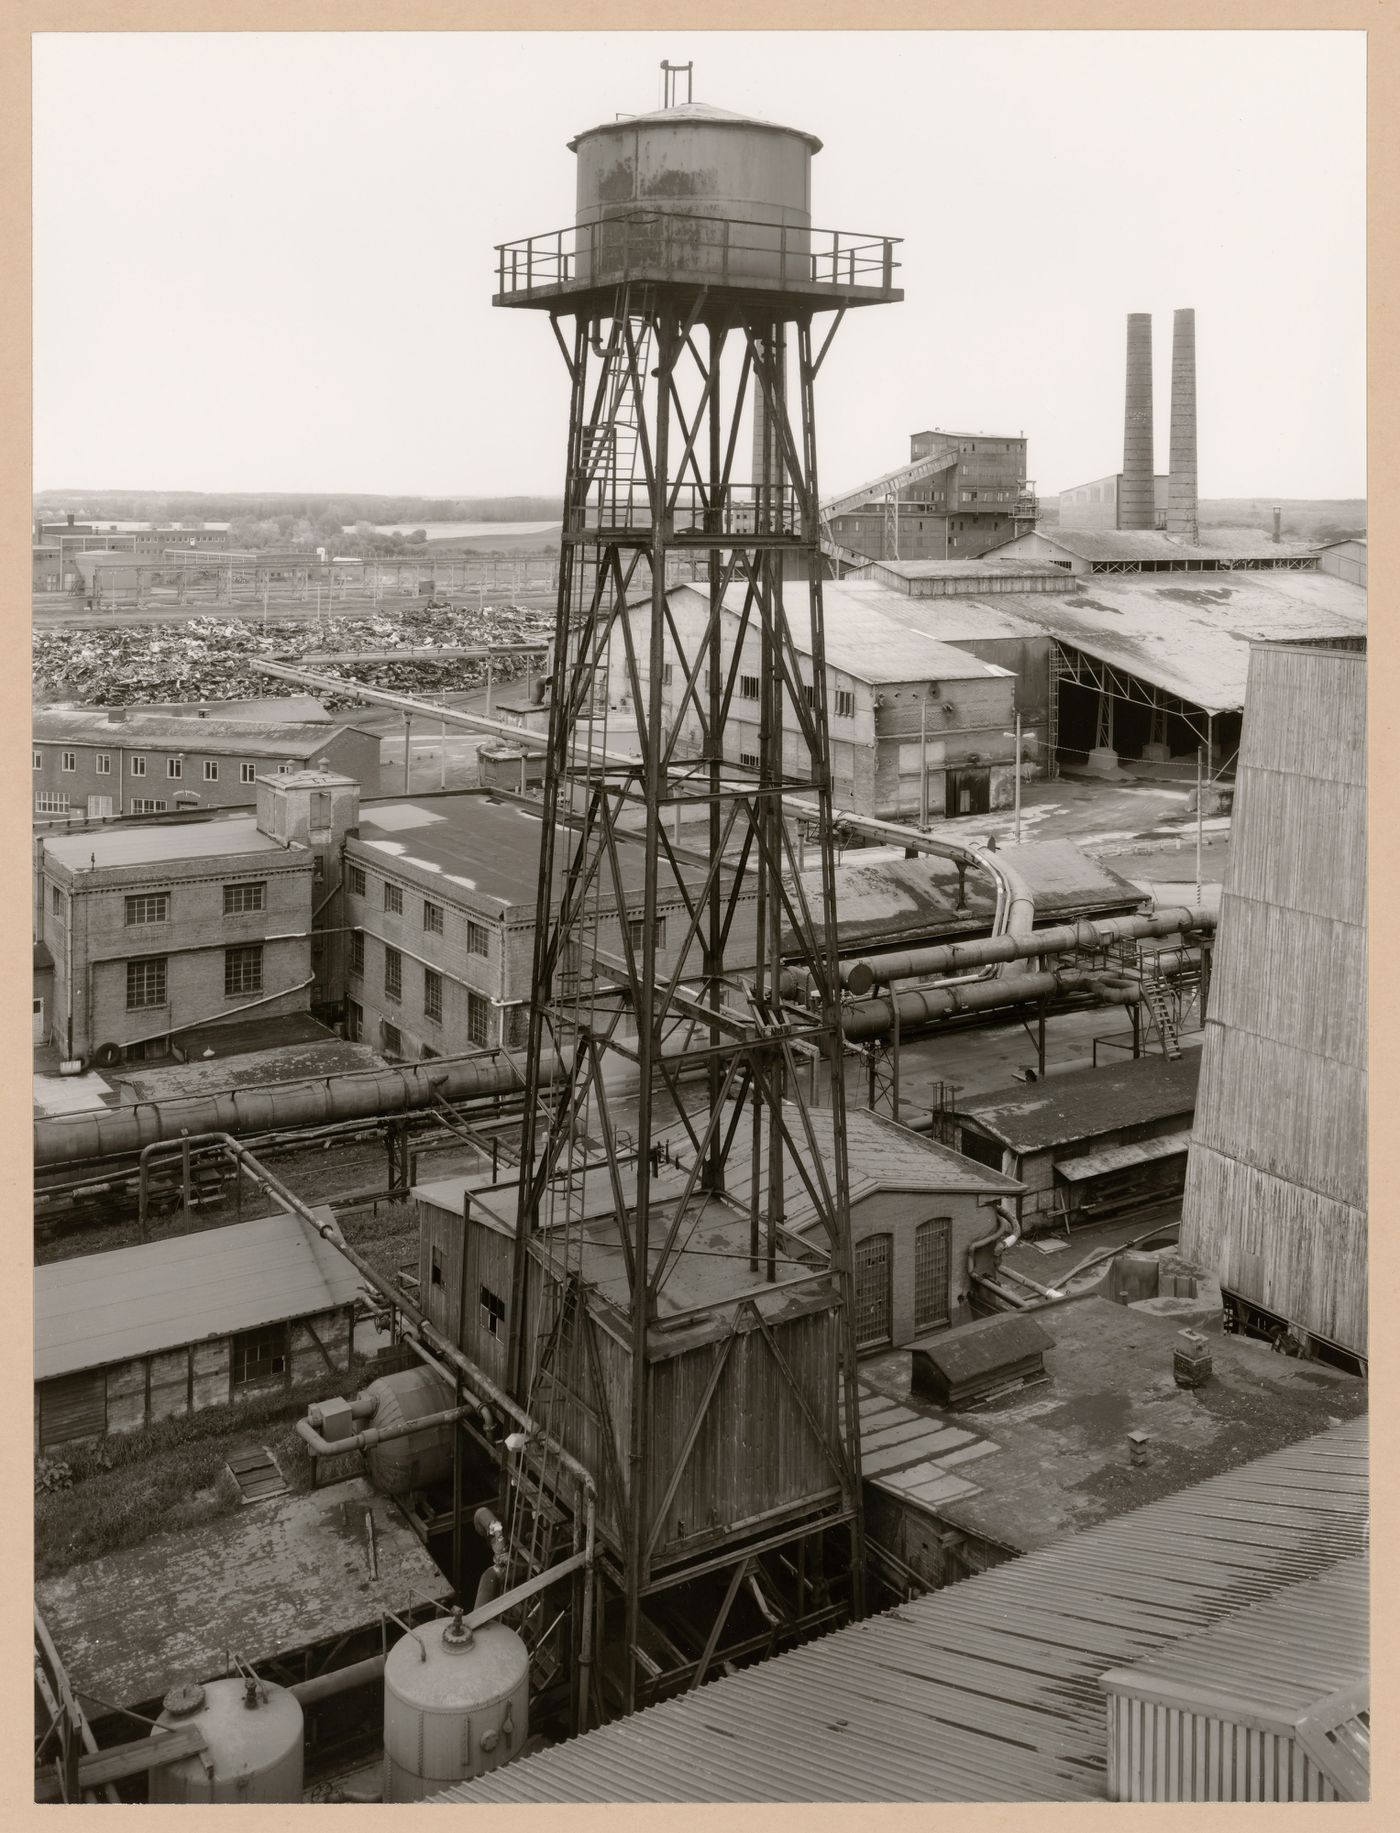 View of Metallhüttenwerk industrial plant showing a water tower, Lübeck-Herrenwyk, Germany